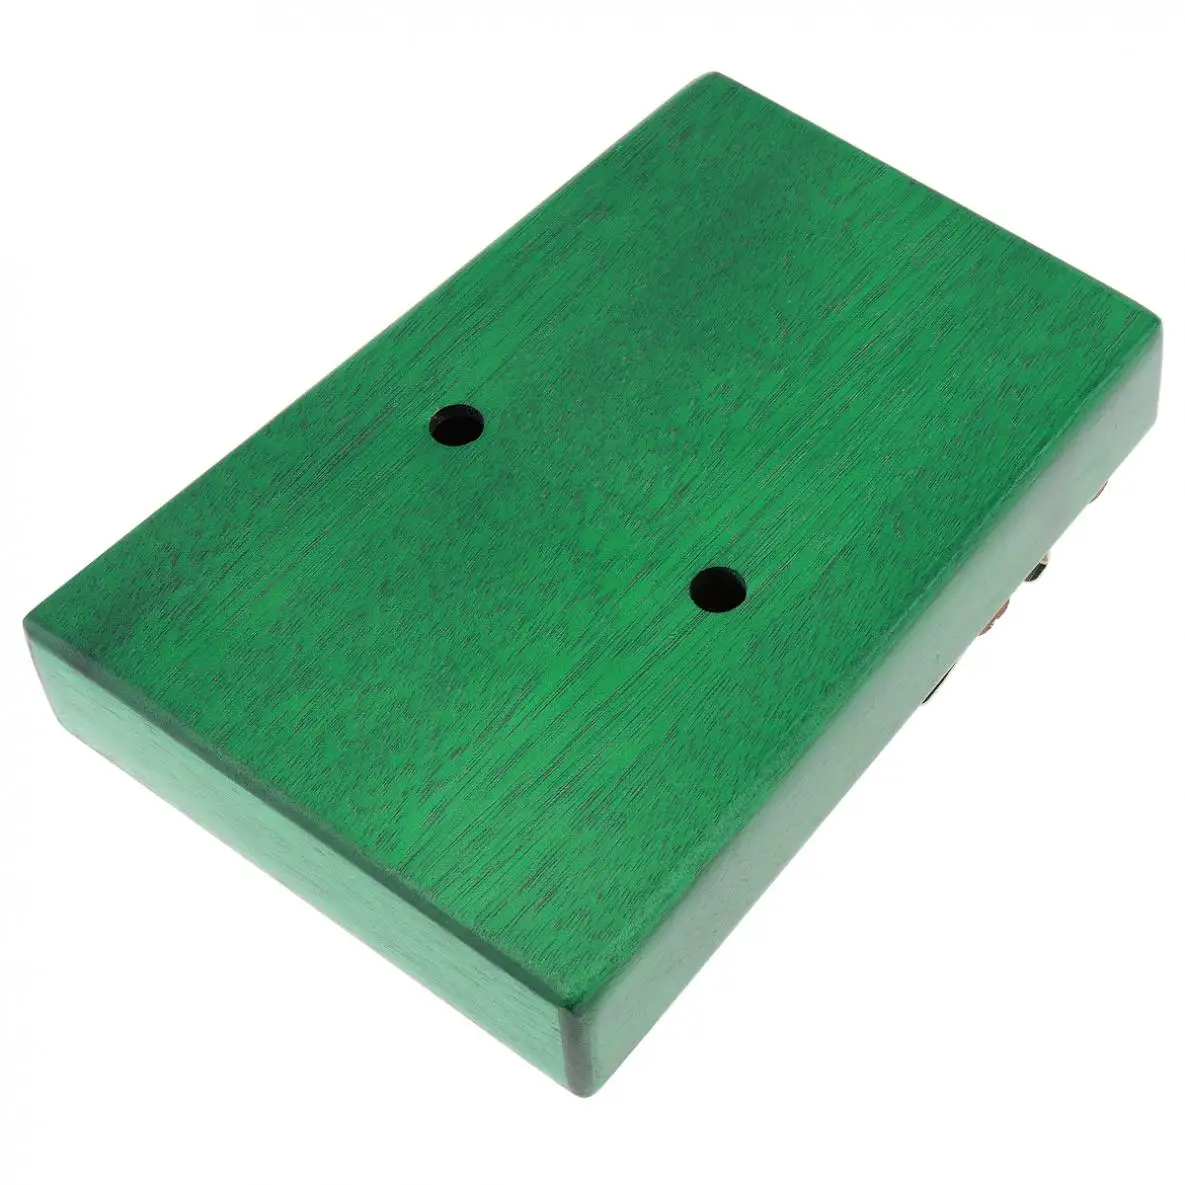 17 ключ зеленый калимба одноплатный красного дерева «пианино для больших пальцев» Mbira мини клавиатурный инструмент с комплектом